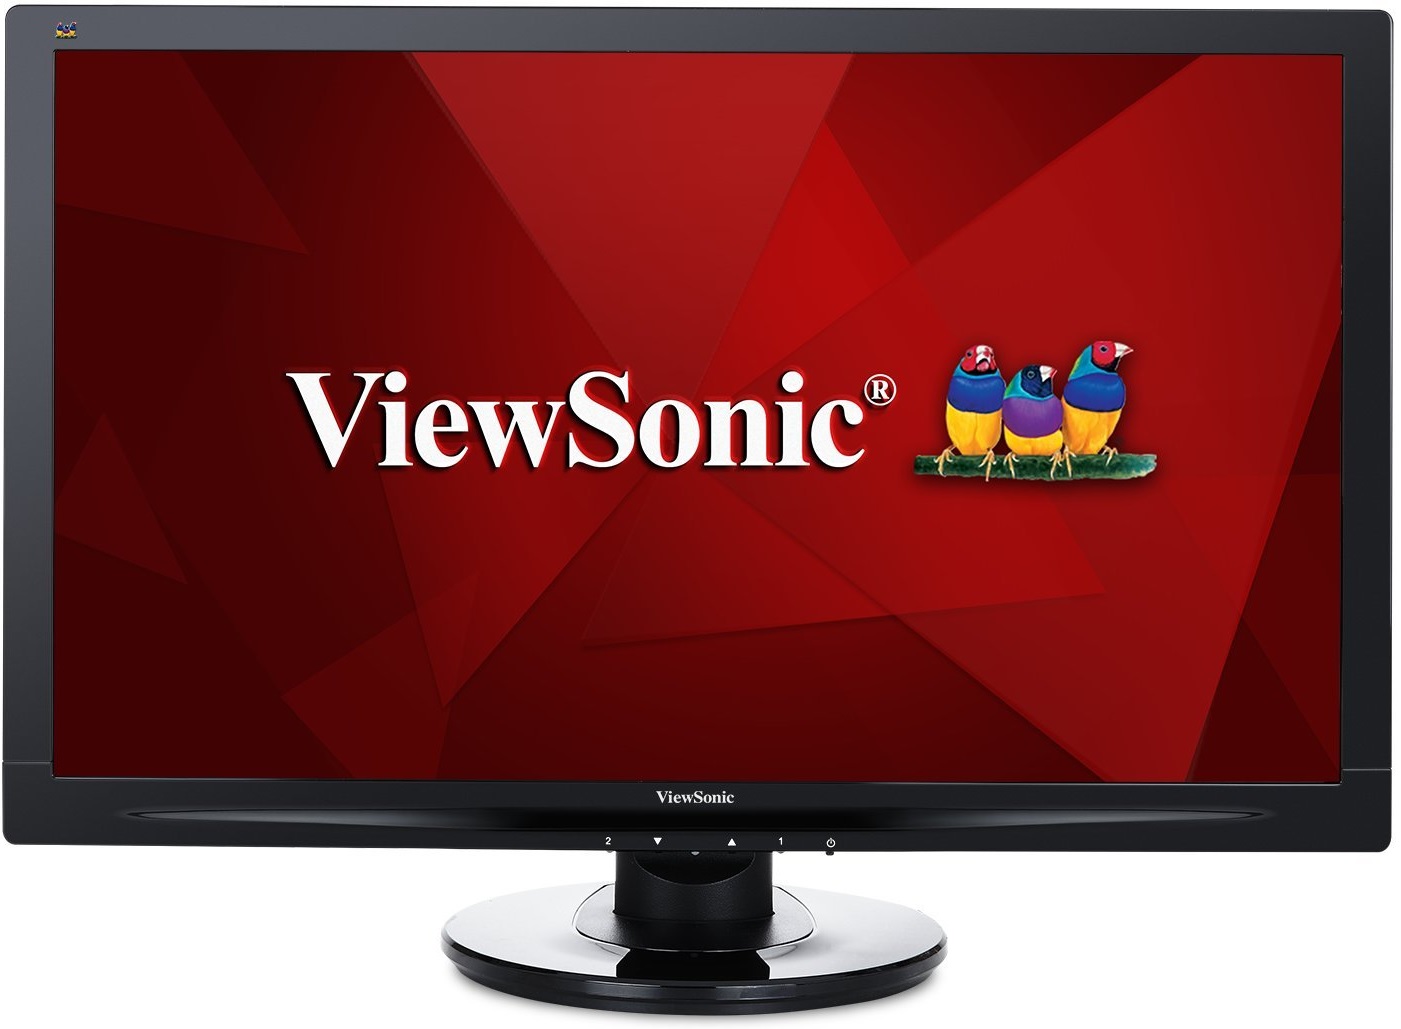 Monitor para PC 24'' Full HD - ViewSonic VA2446mh-LED | Área Visible 23.6'', Panel MVA, Resolución 1920 x 1080, Contraste Estático 3.000:1, Contraste Dinámico 50.000.000:1, Fuente de Luz LED, Brillo 300 cd/m2, Puertos: VGA & HDMI, Audio 2.5W (x2)